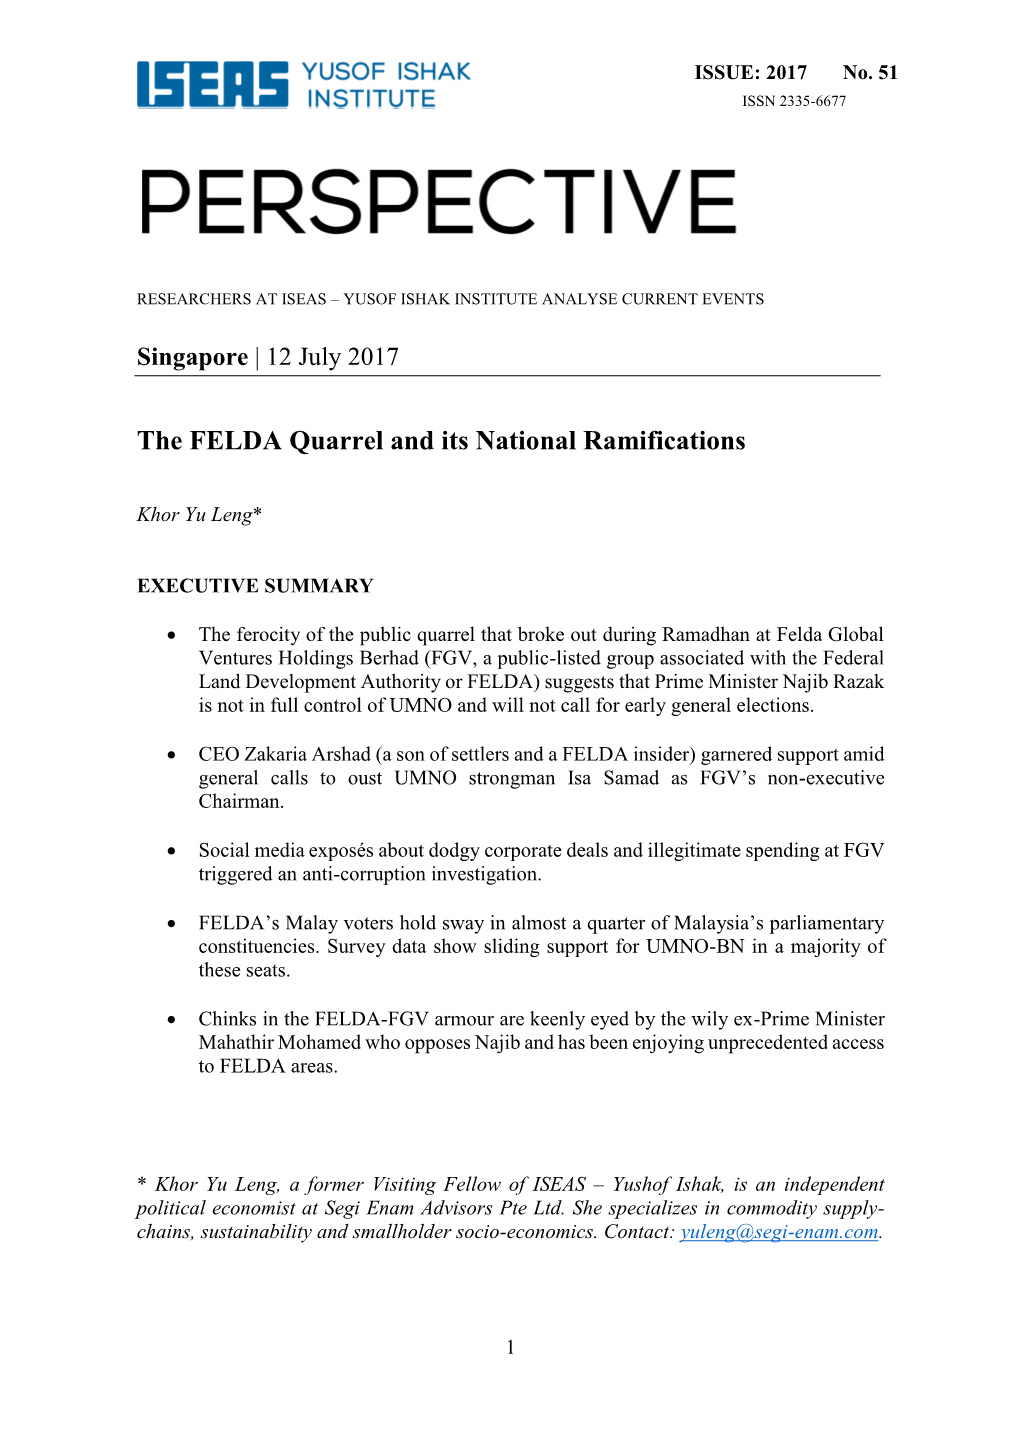 The FELDA Quarrel and Its National Ramifications